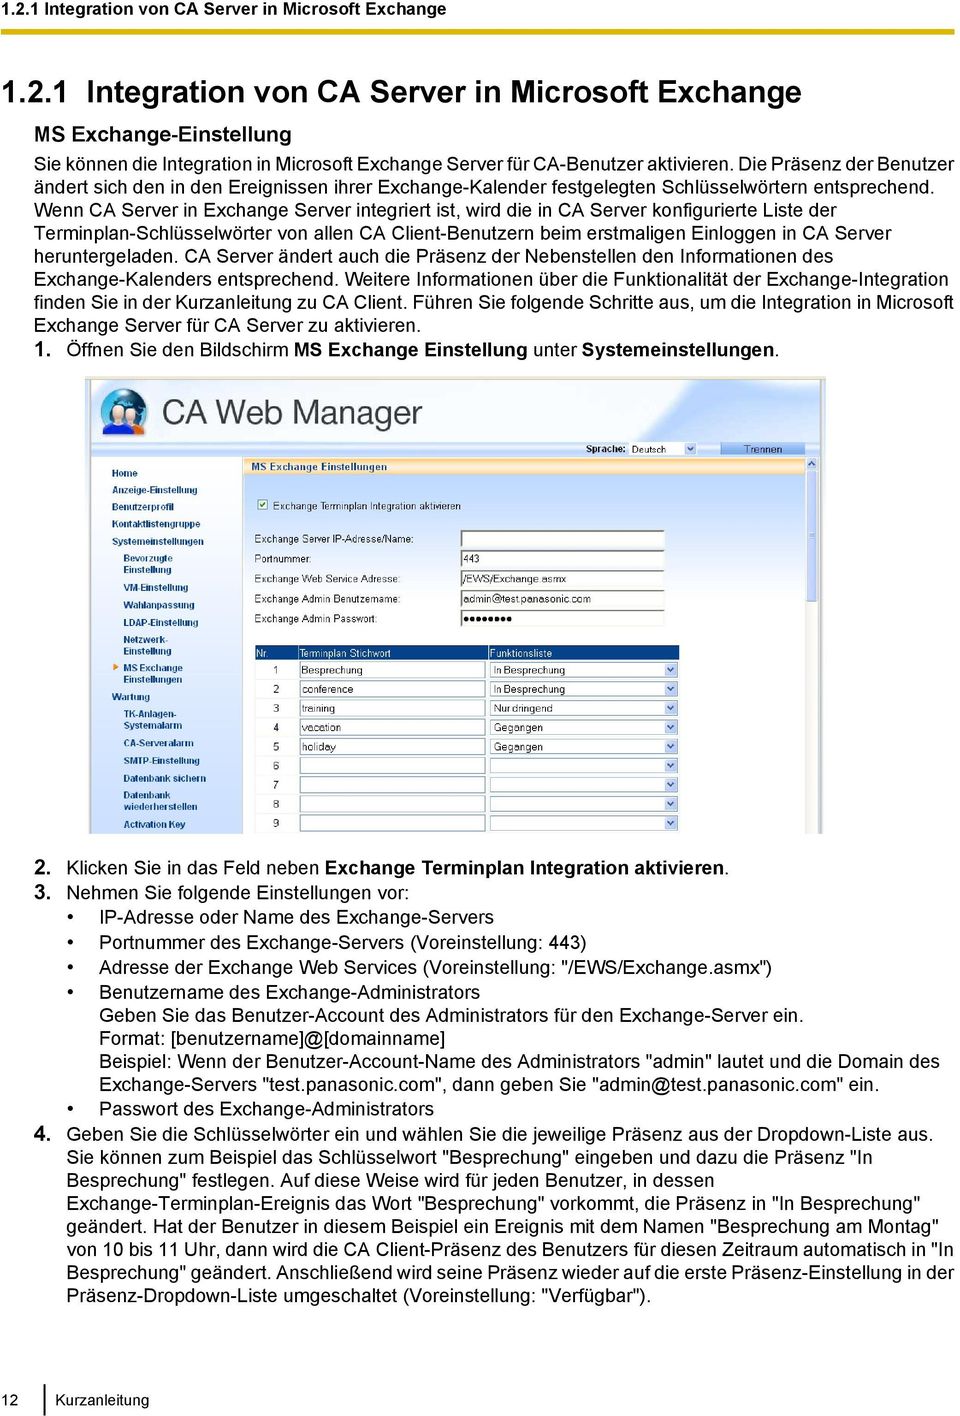 Wenn CA Server in Exchange Server integriert ist, wird die in CA Server konfigurierte Liste der Terminplan-Schlüsselwörter von allen CA Client-Benutzern beim erstmaligen Einloggen in CA Server